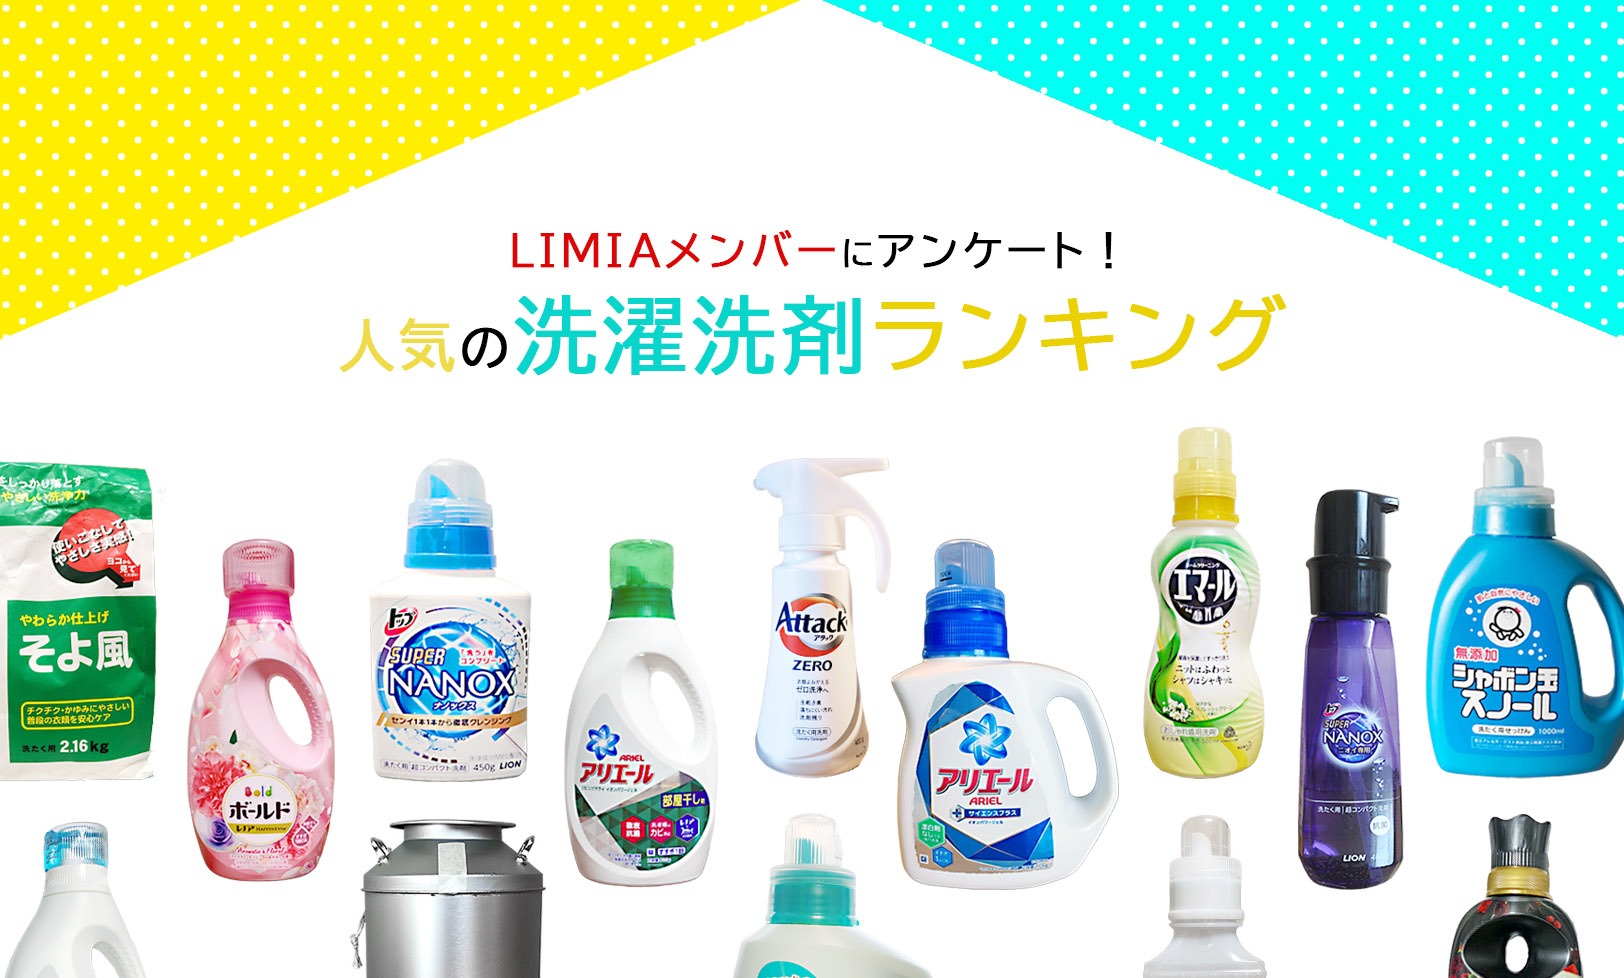 21 洗濯洗剤おすすめランキング25選 粉末 液体 ジェルボールの人気商品をアンケート調査 Limia リミア